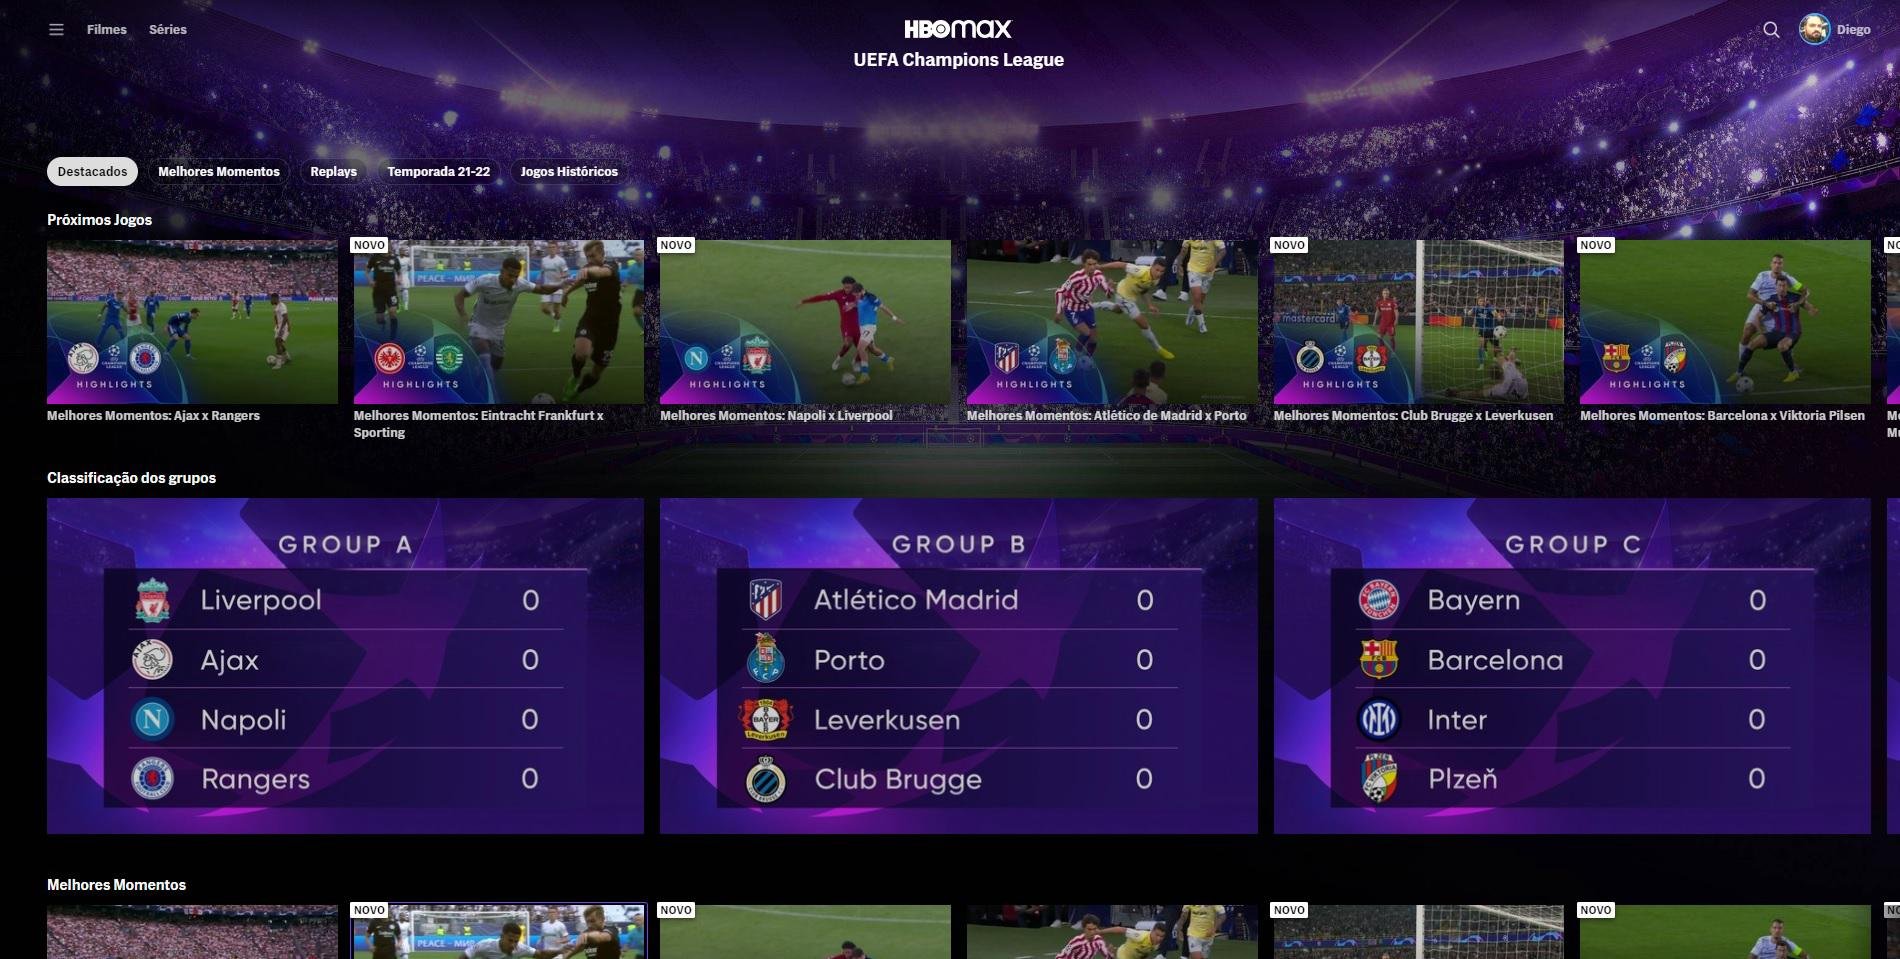 O HBO Max traz uma página totalmente dedicada a UEFA Champions League com tabela e vídeos de melhores momentos das partidas